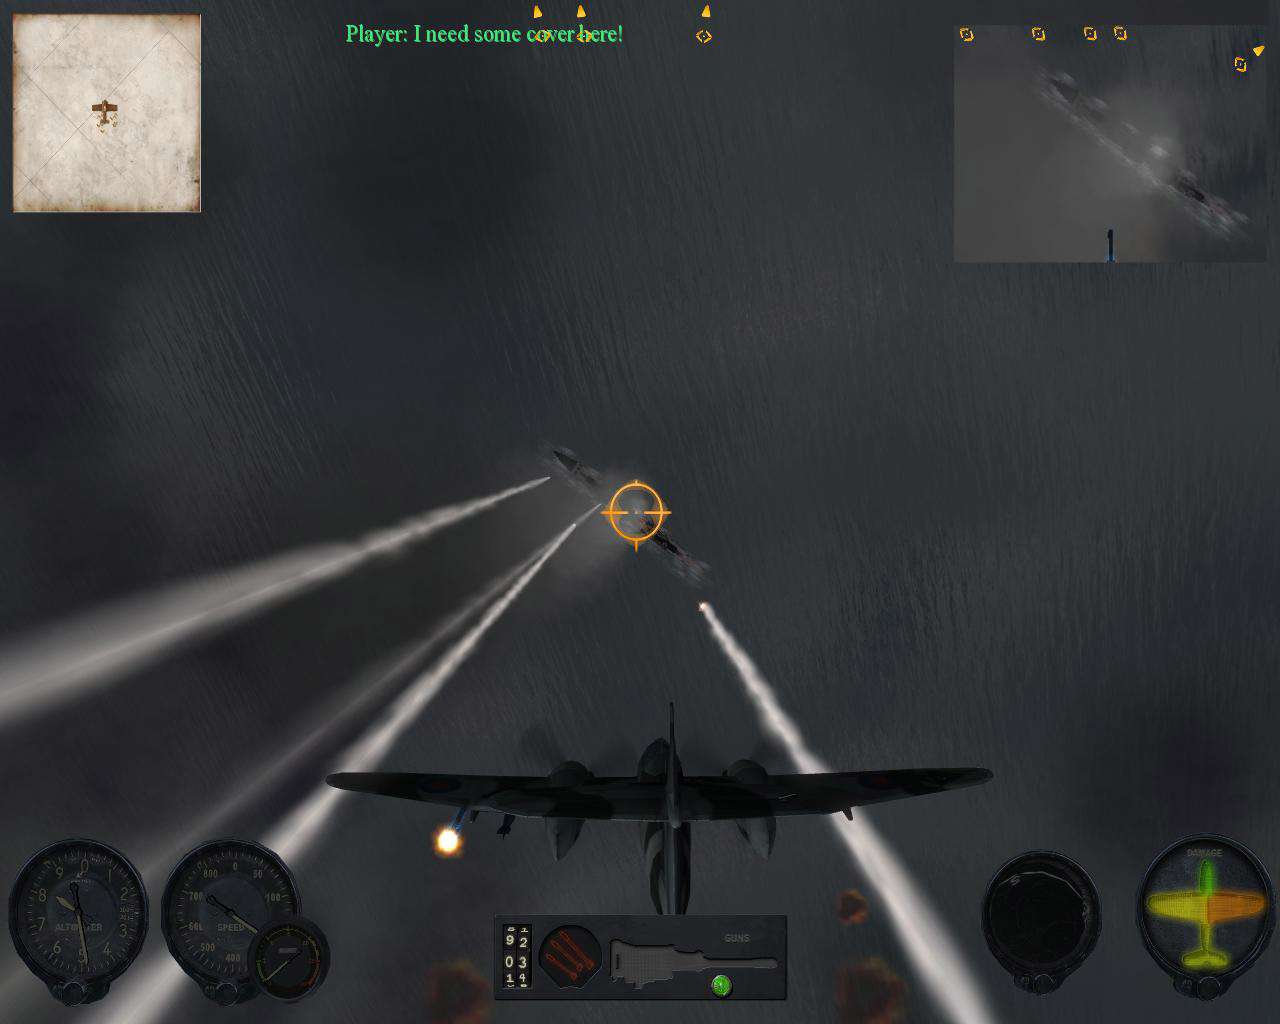 Combat Wings: Battle of Britain screenshot